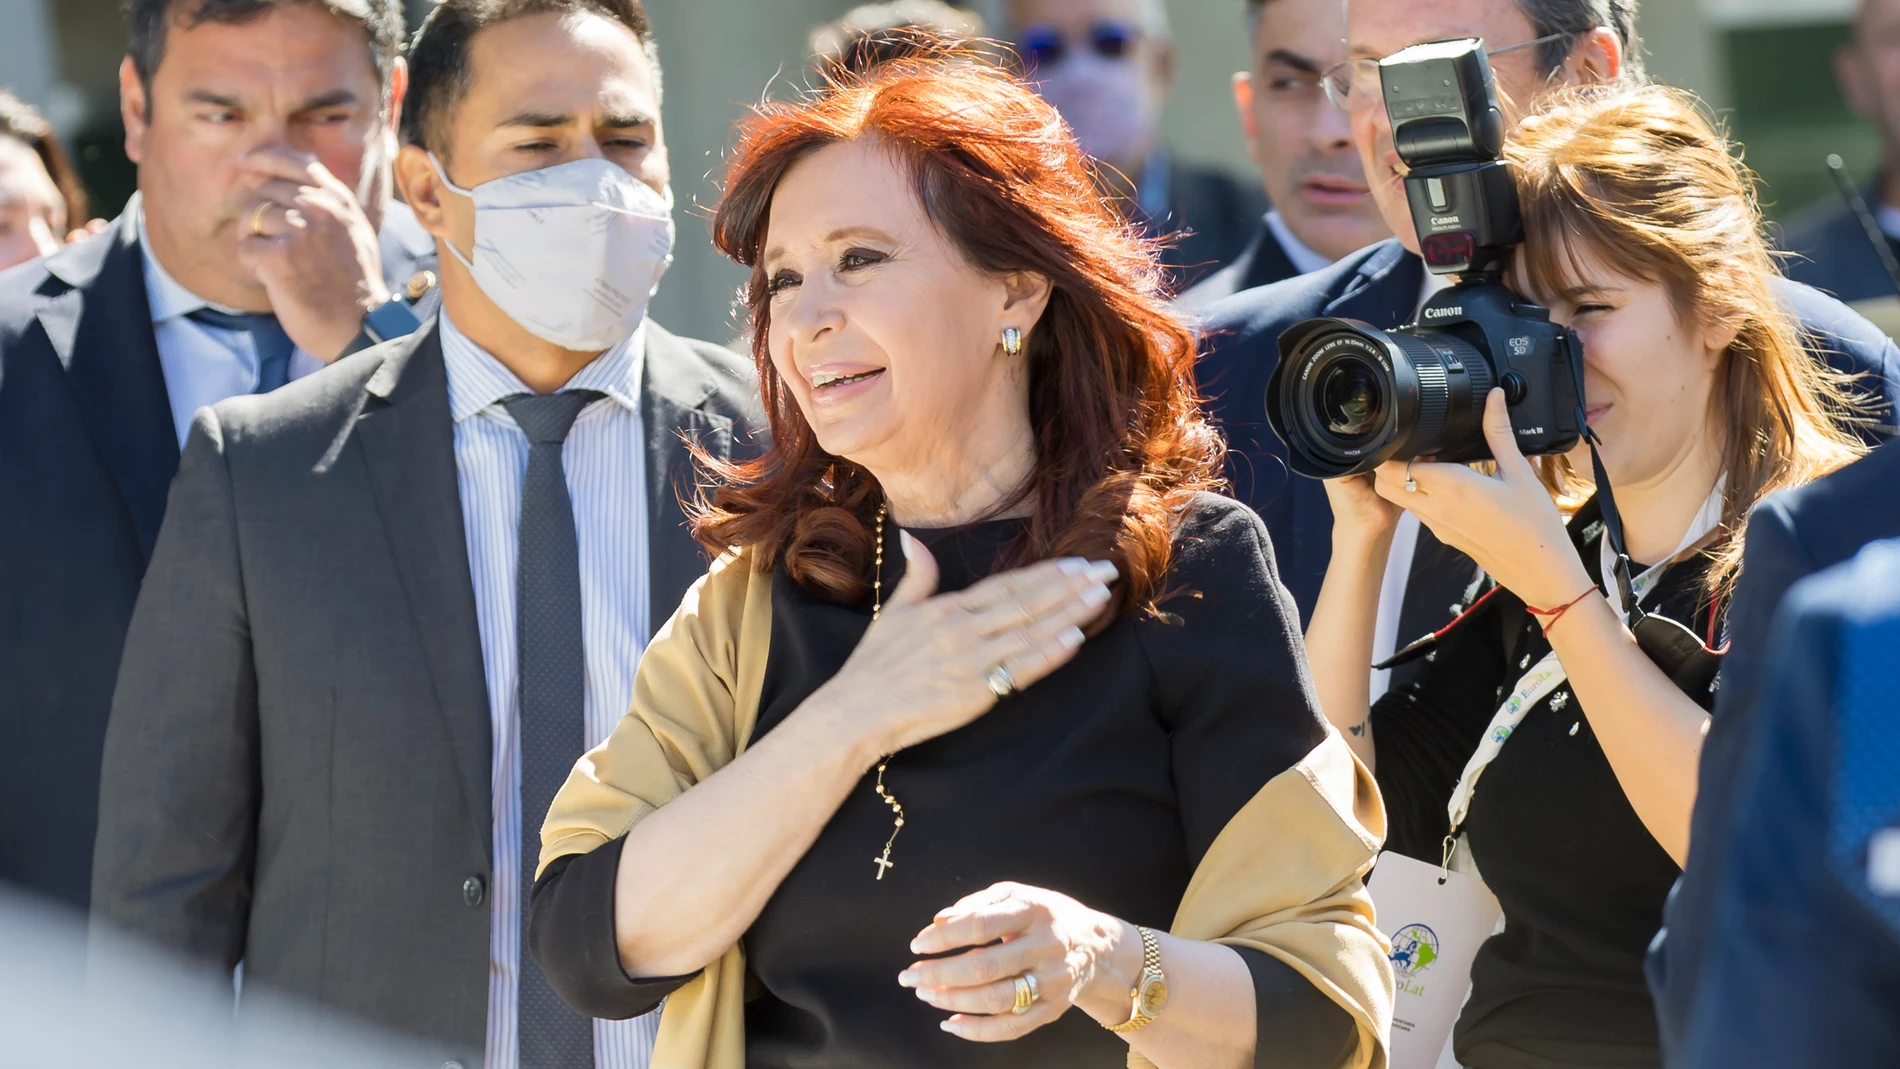 AMP.- Argentina.- La Justicia argentina reabre dos causas contra Cristina Fernández por supuesto lavado de dinero